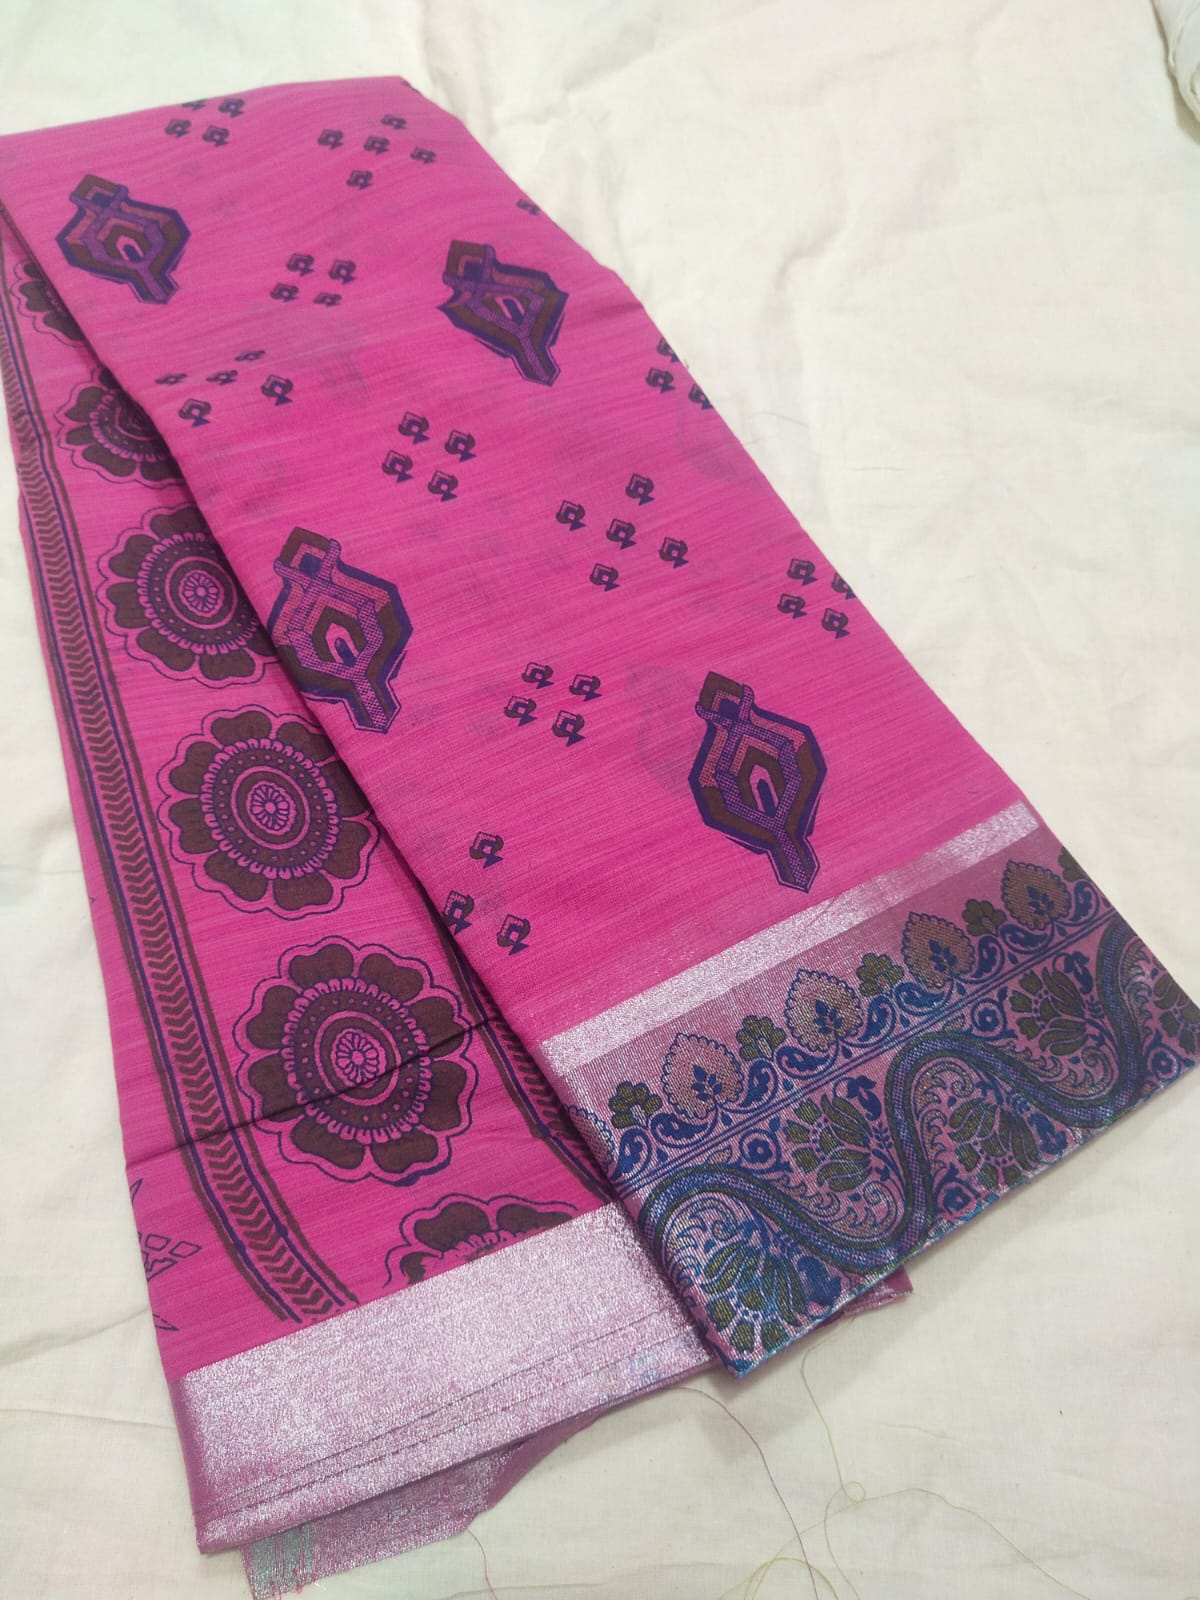 Kota cotton printed sarees